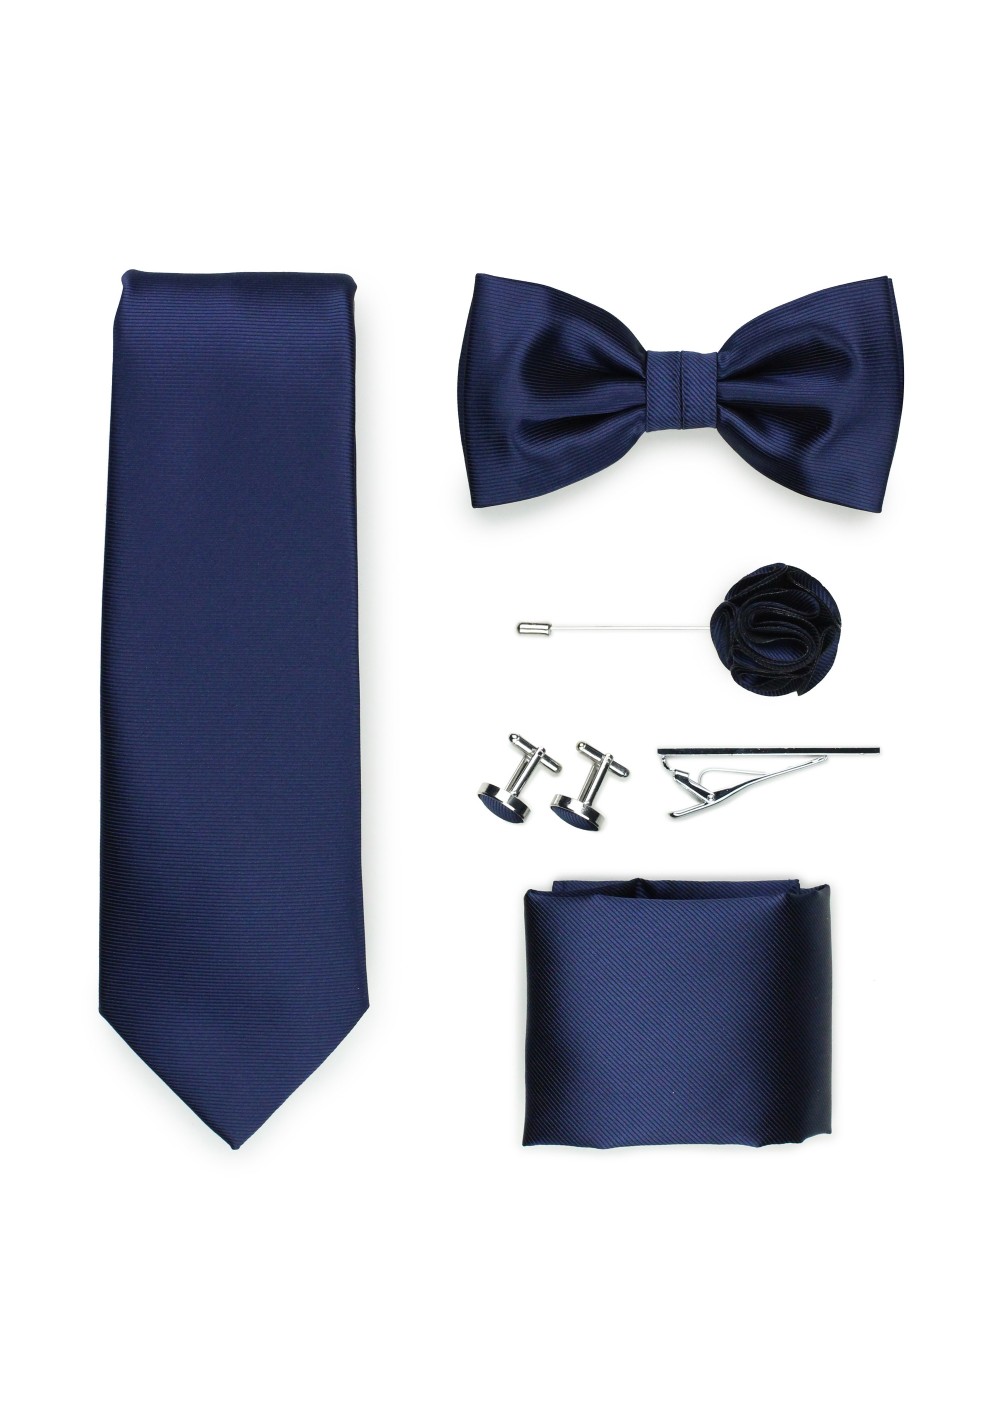 navy blue tie gift set